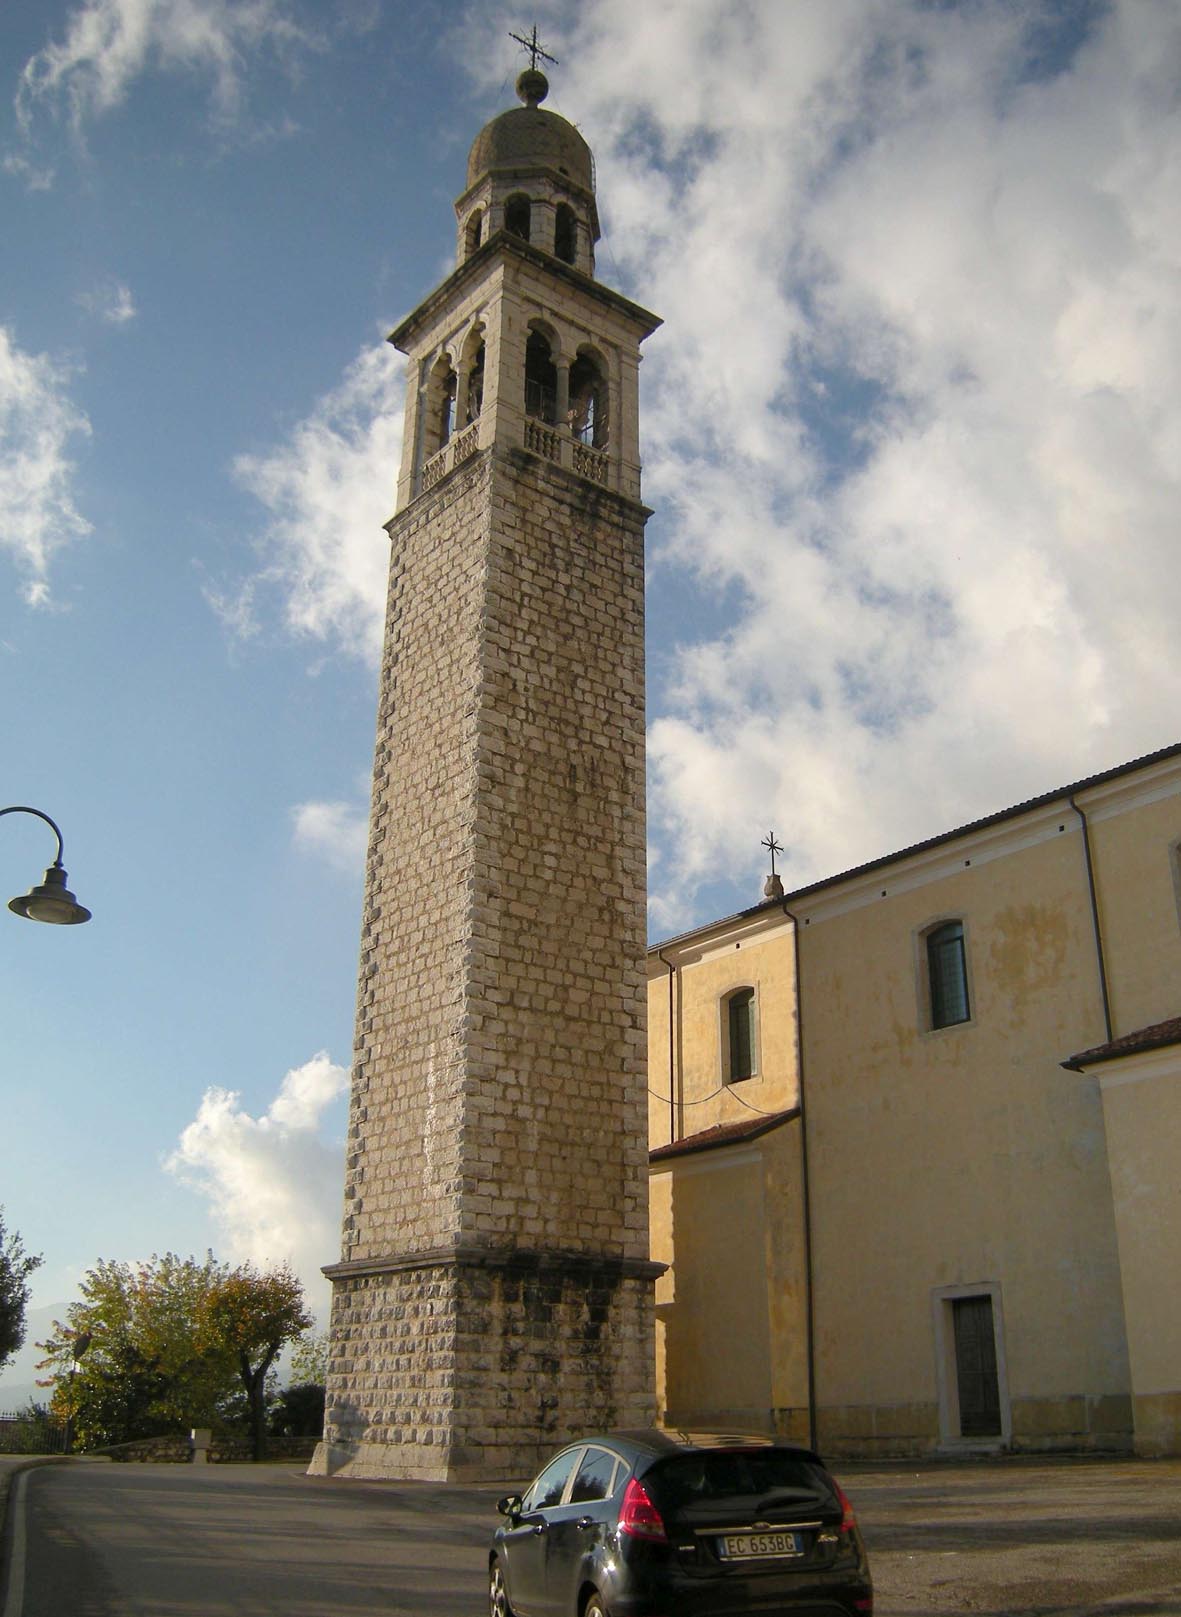 Campanile della Chiesa di San Pancrazio Martire (campanile) - Sarmede (TV) 